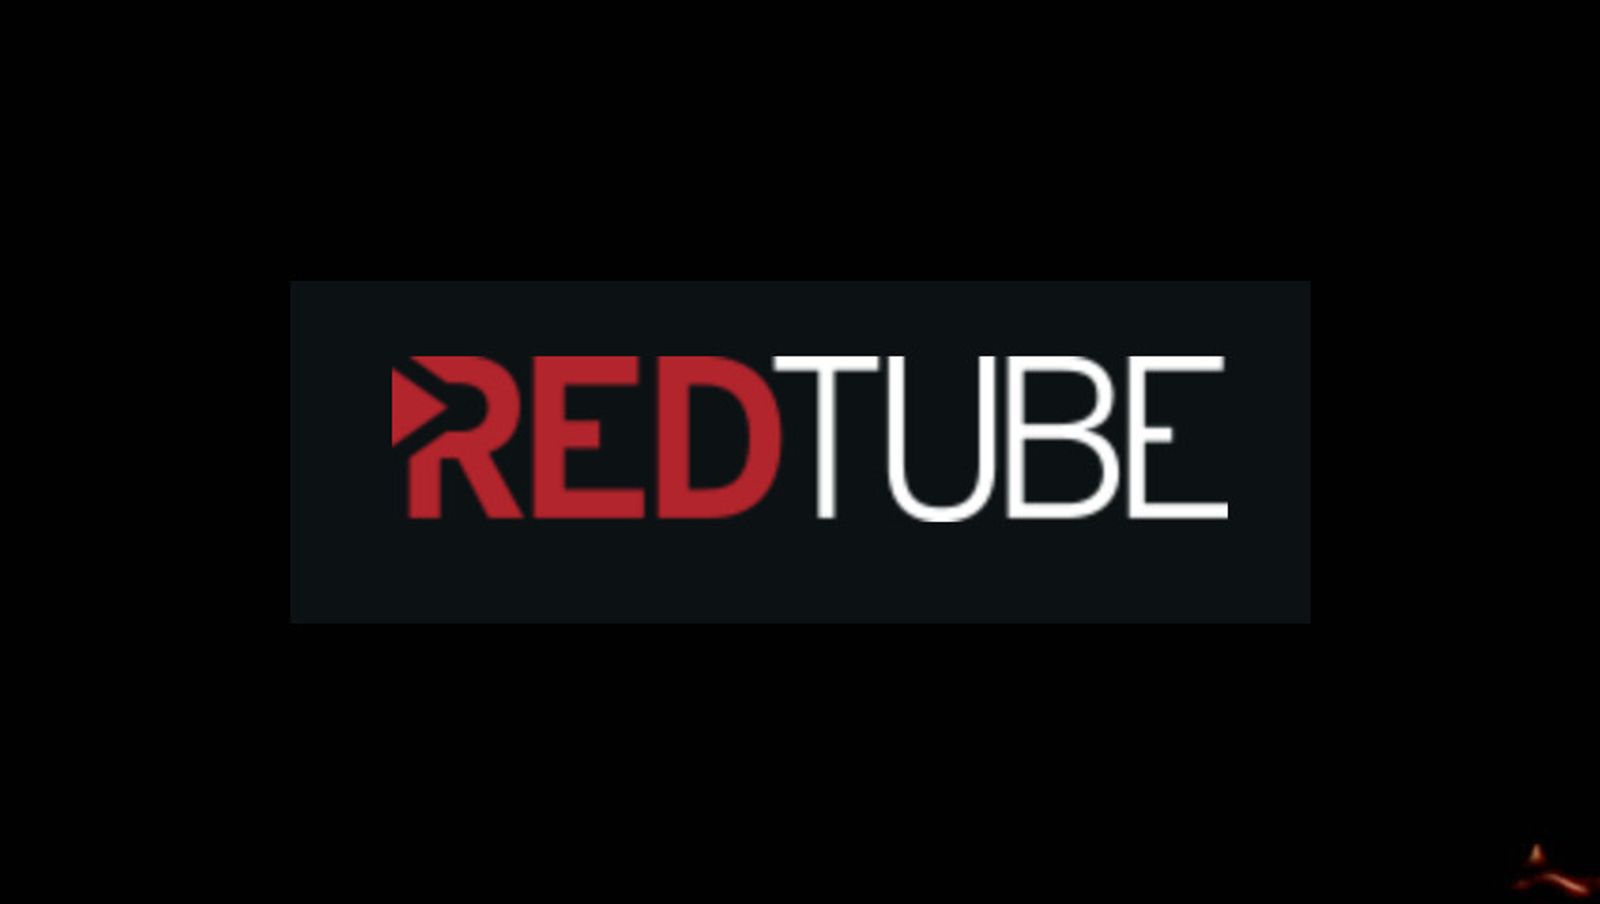 RedTube Launches Bug Bounty Program With $25K Maximum Payout